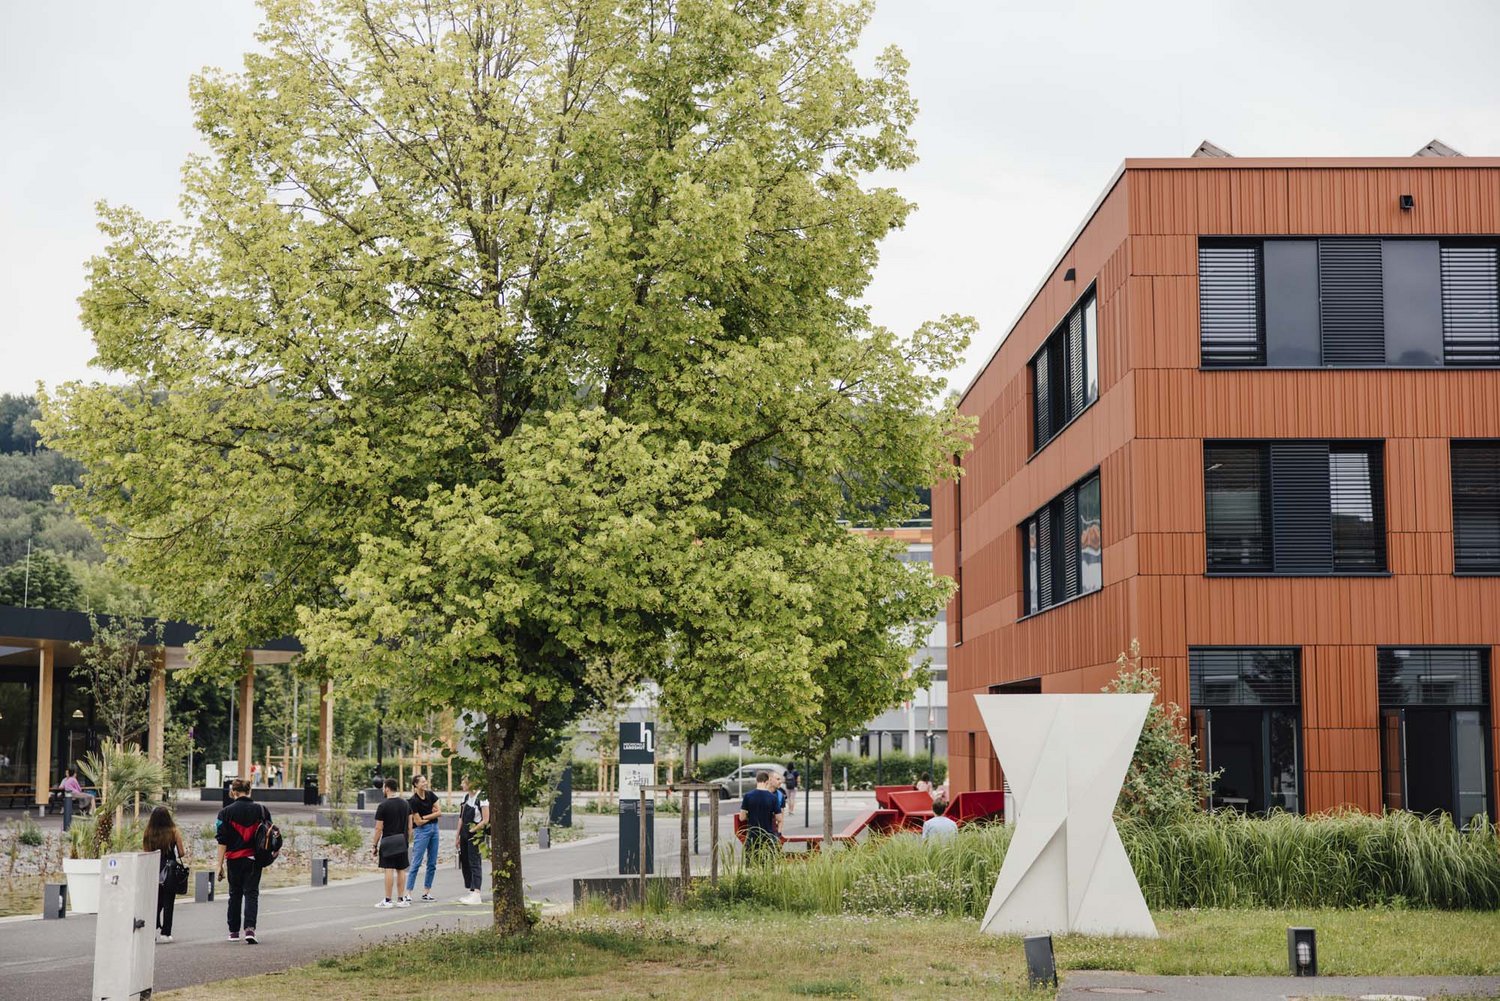 Ansicht der Hochschule, die auf der rechten Seite ein rotes Gebäude, mittig einen grünen Laubbaum und links davon Studierende auf einem asphaltierten Weg zeigt.